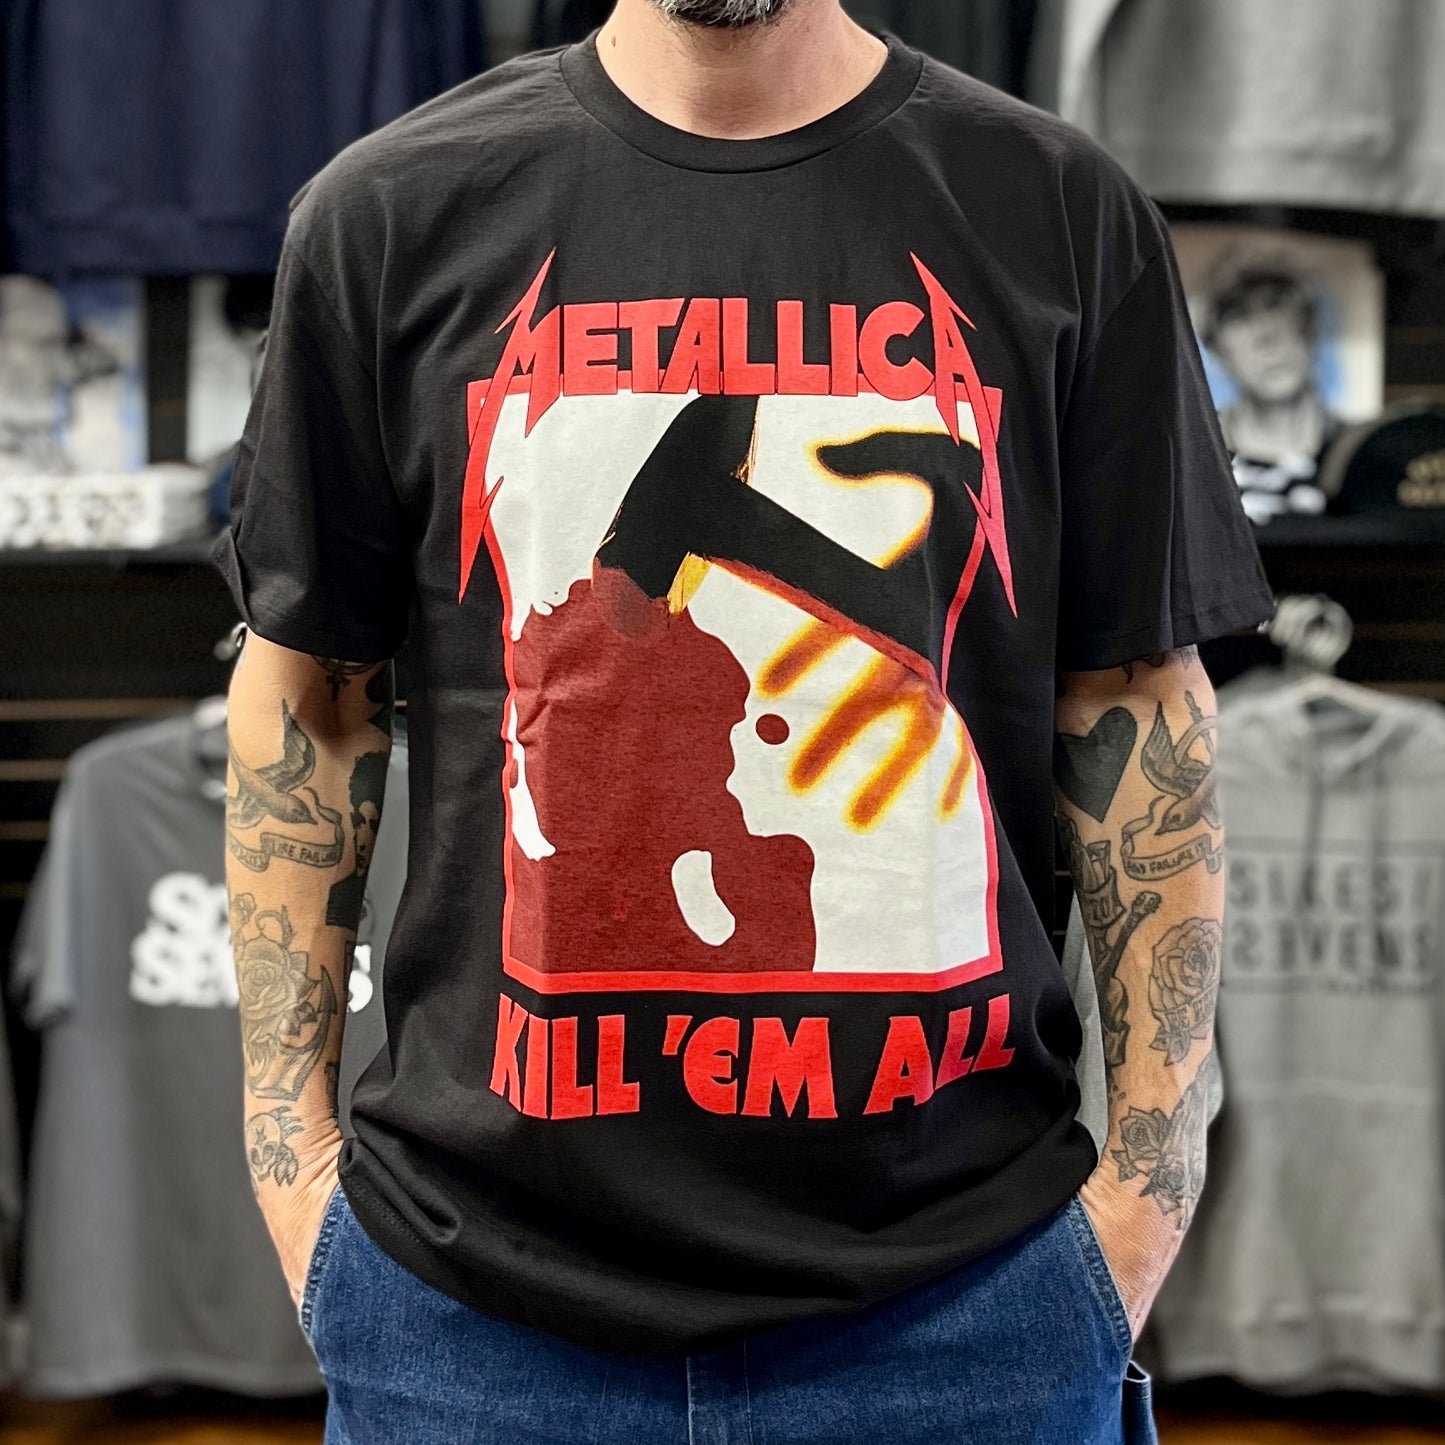 Metallica T-Shirt - Kill 'Em All